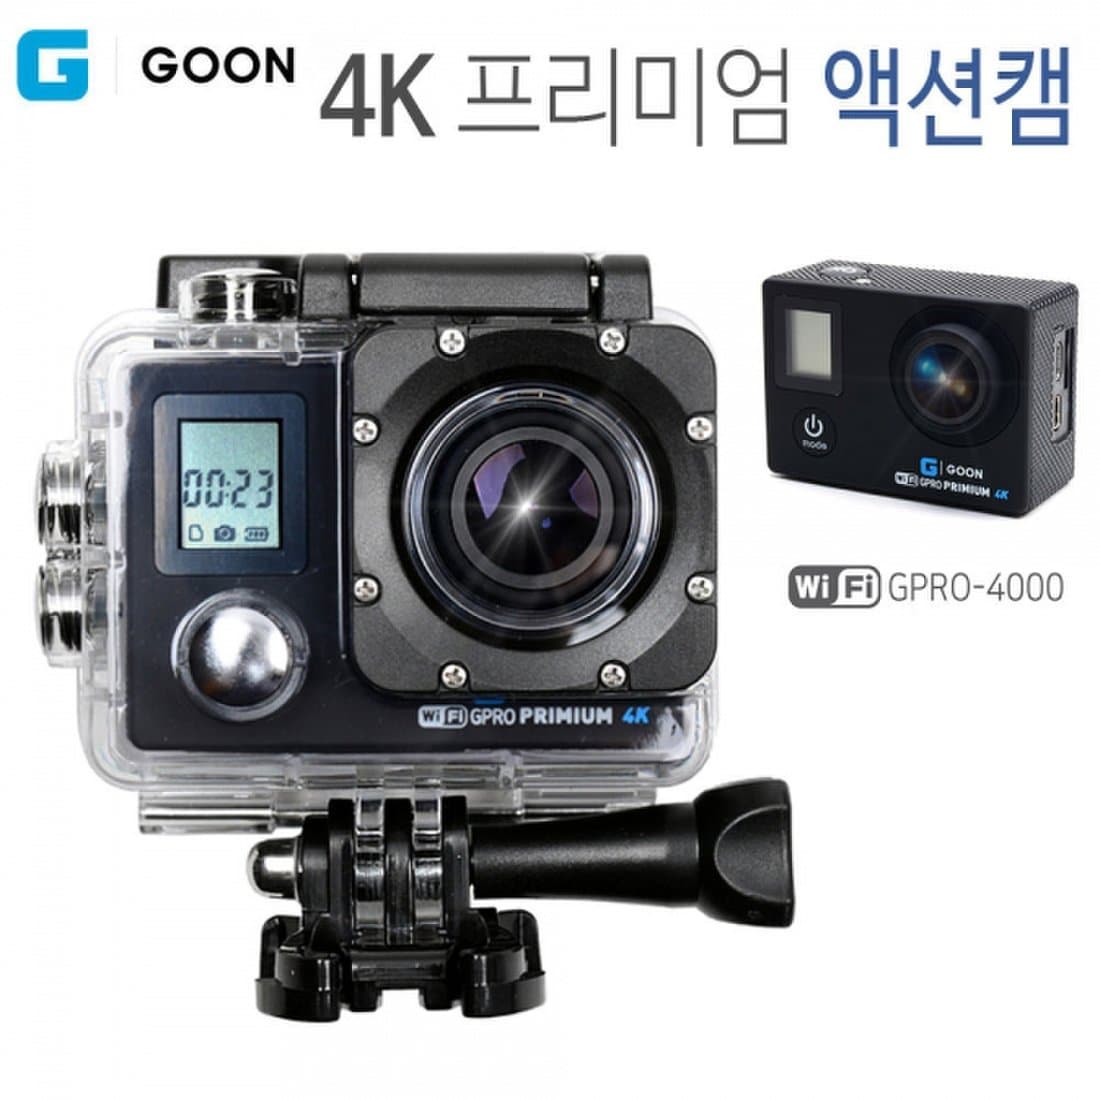 PC 액션캠 블랙 G GOON GPRO 4000 온라인교육 화상 카메라